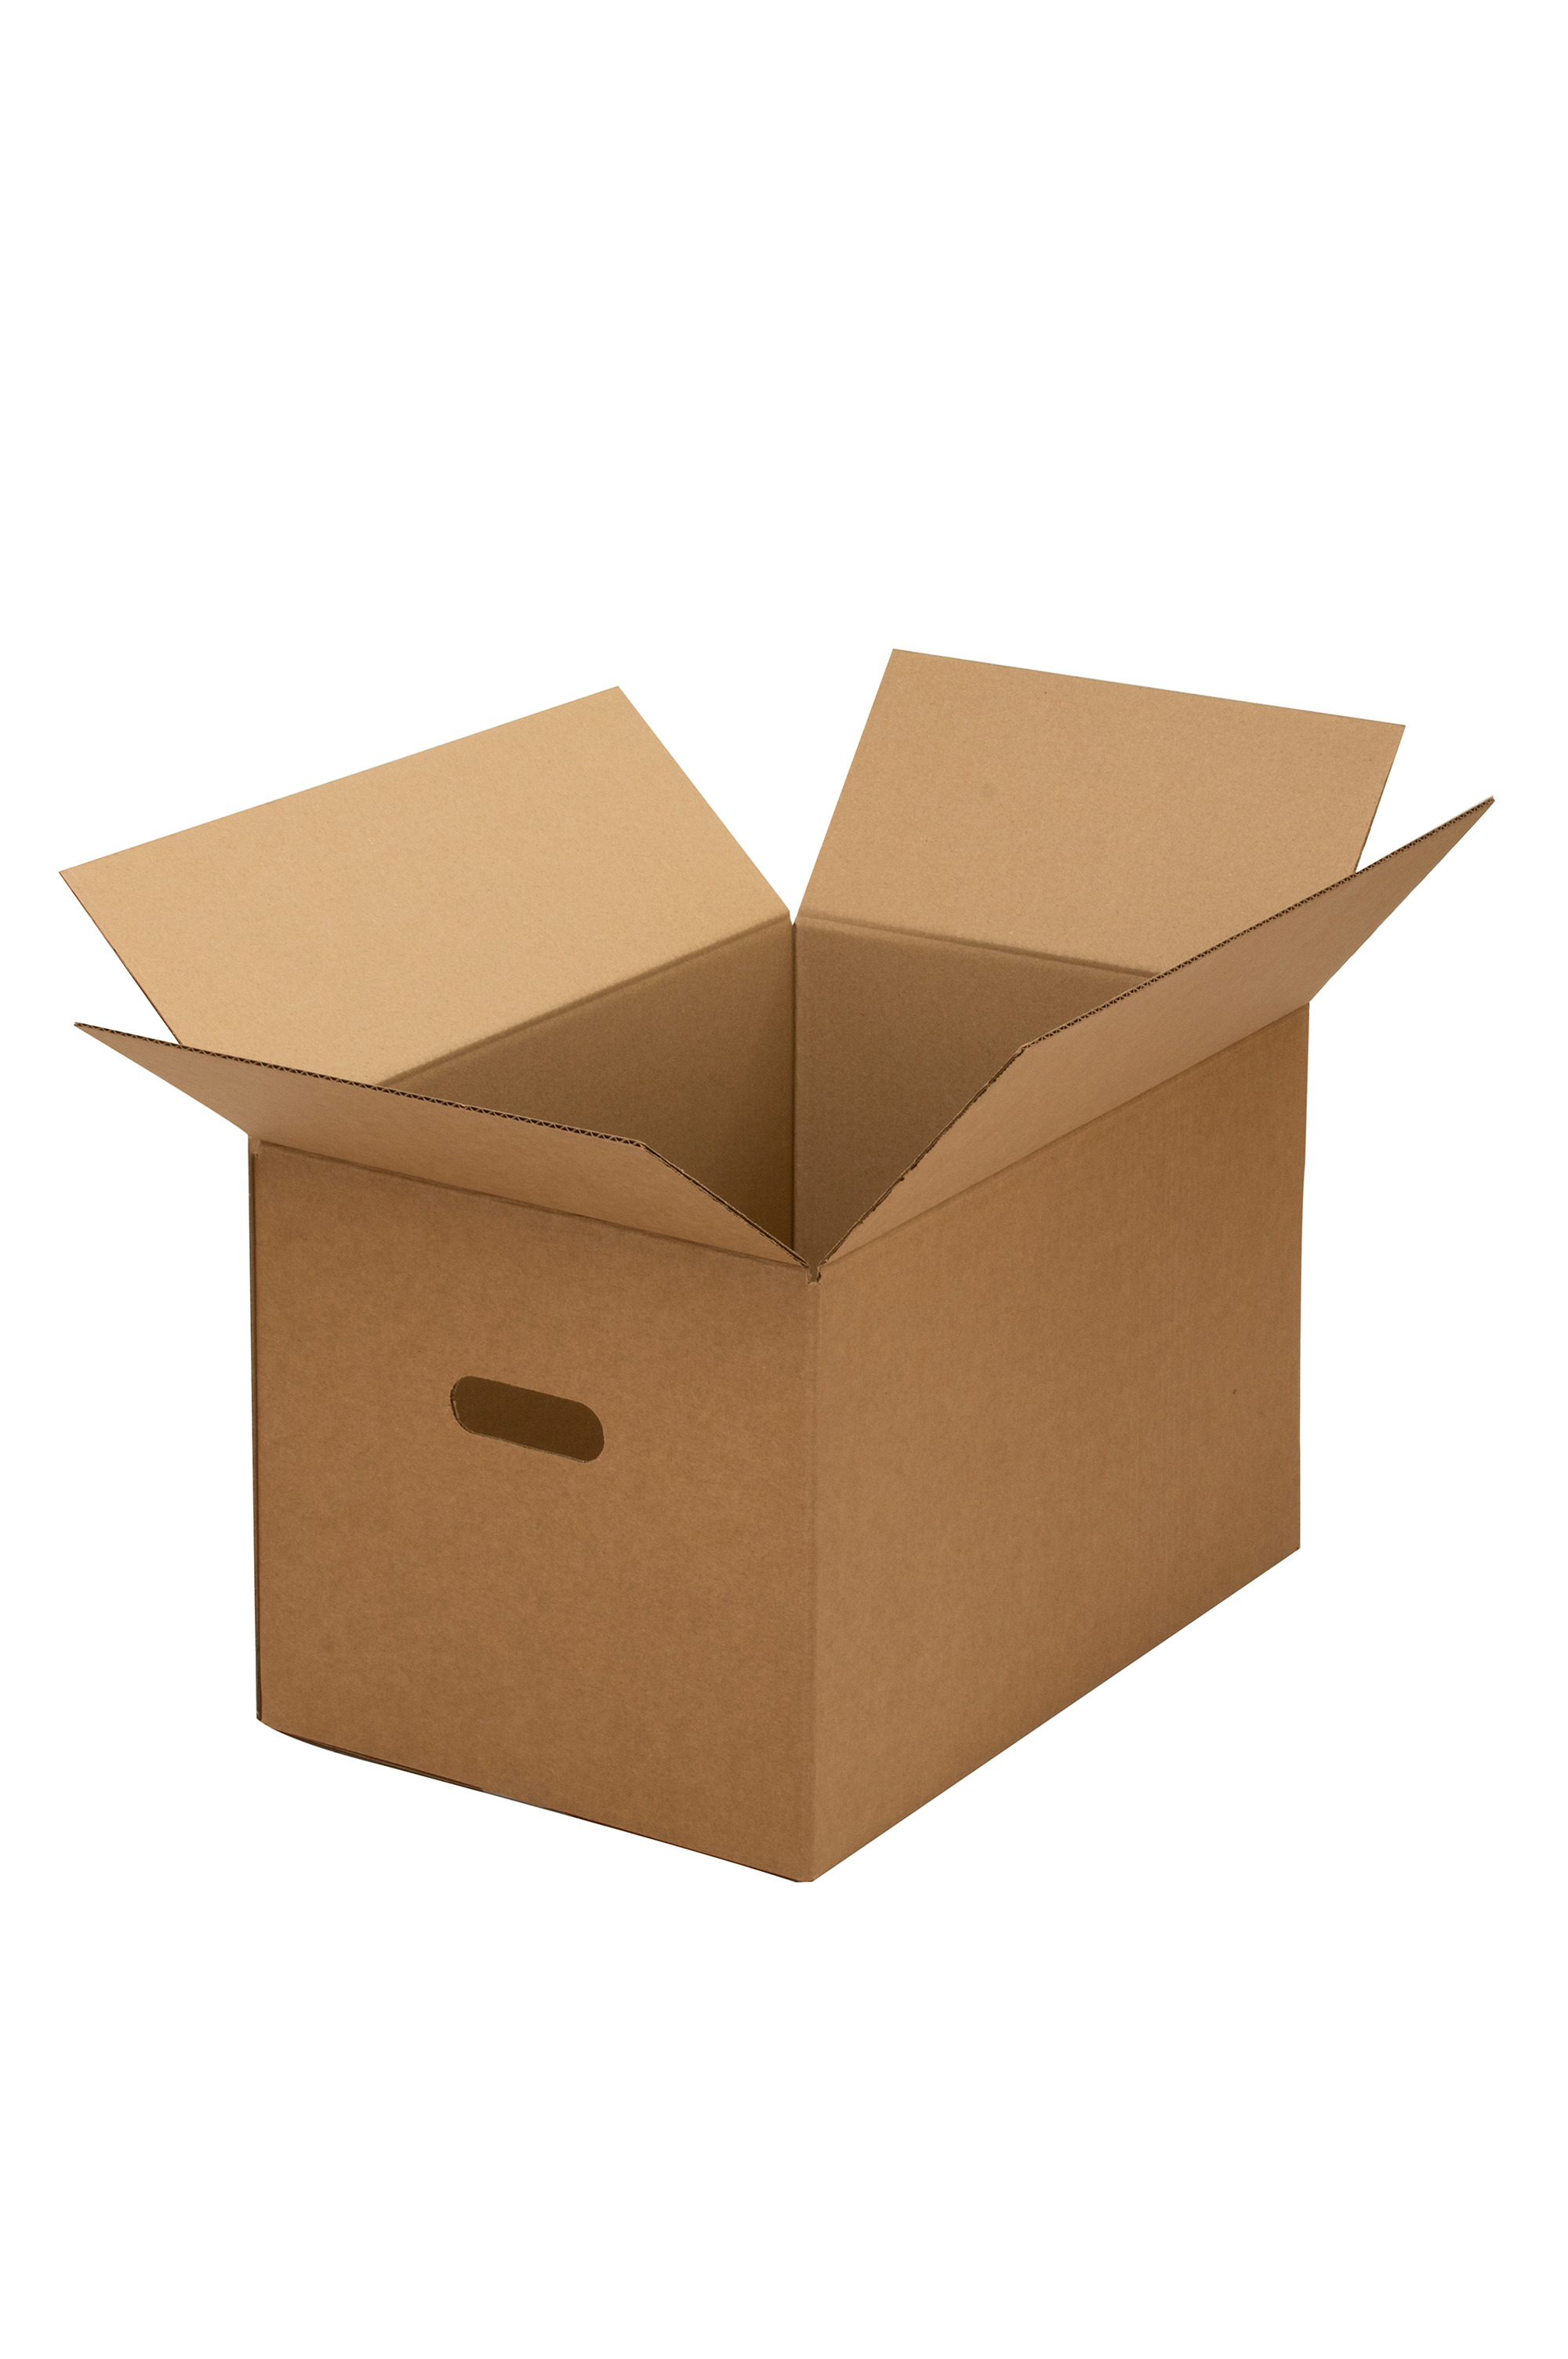 Картонные коробки для переезда. Коробки для переезда. Домовой коробки для переезда. Мегастрой коробки для переезда. Коробка для хранения moving Box, 40 х 25 х 26 см.